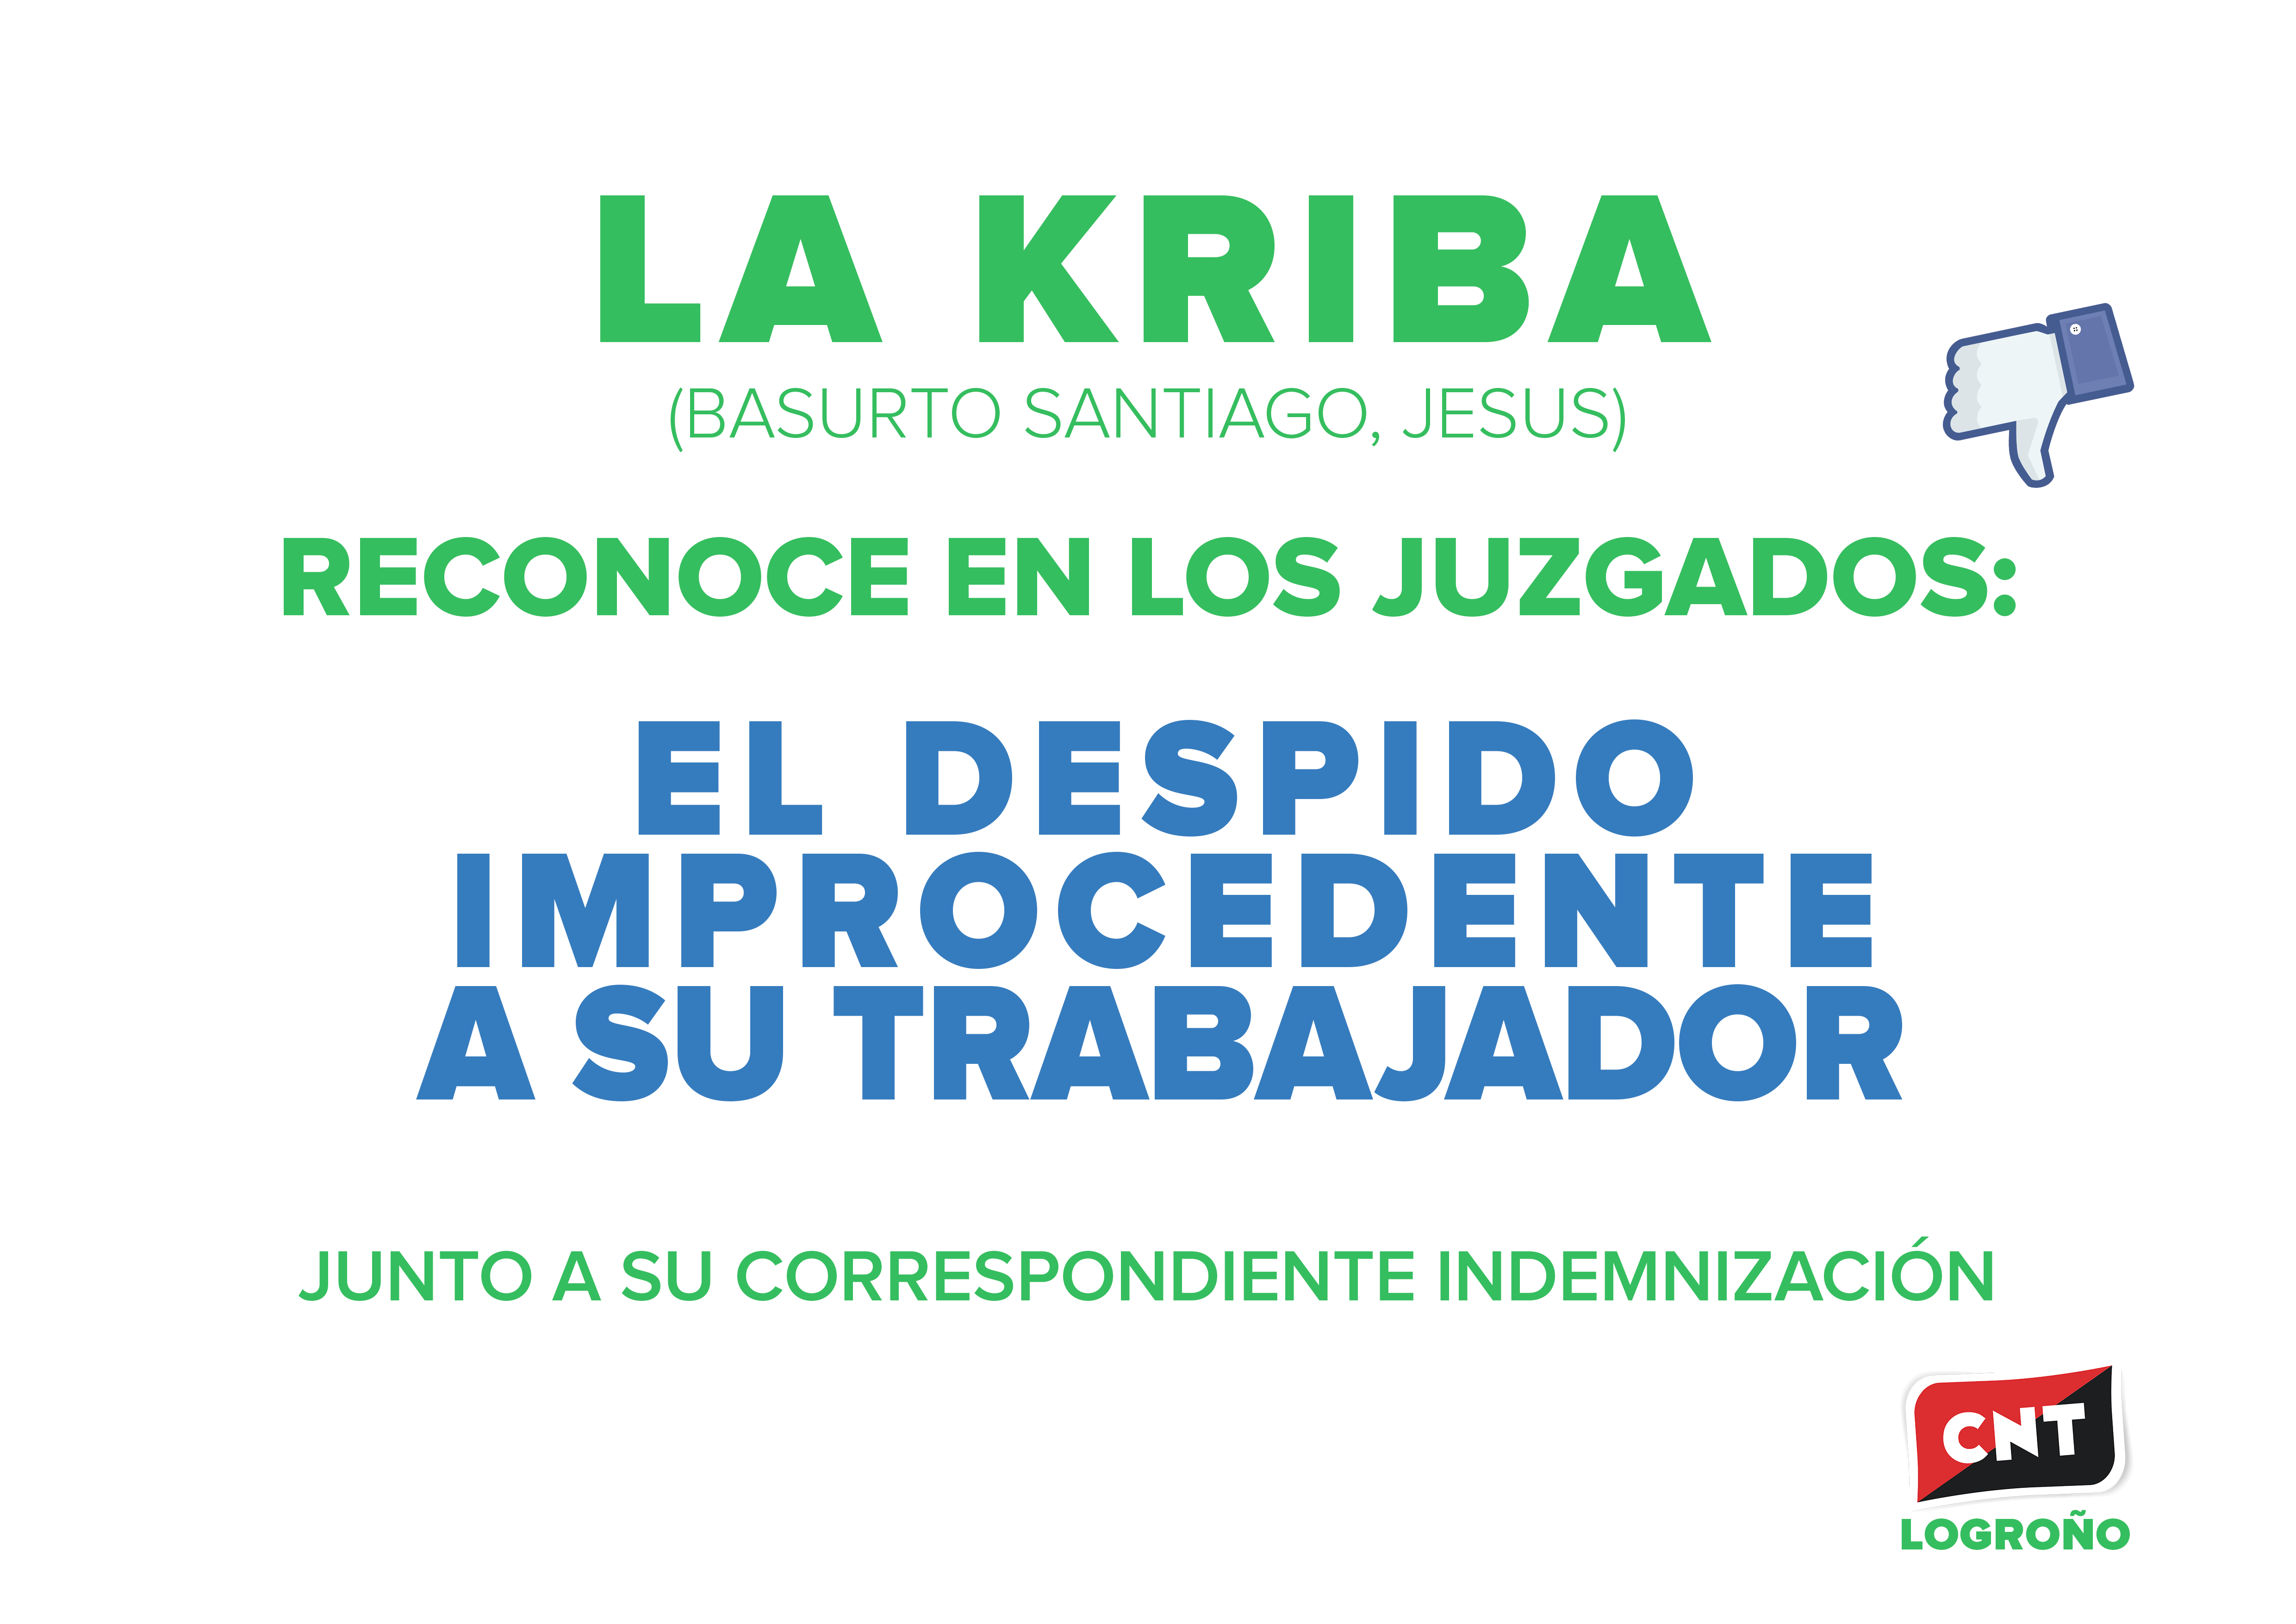 La Kriba (empresa Basurto Santiago Jesus) reconoce en los juzgados la improcedencia del despido de su trabajador